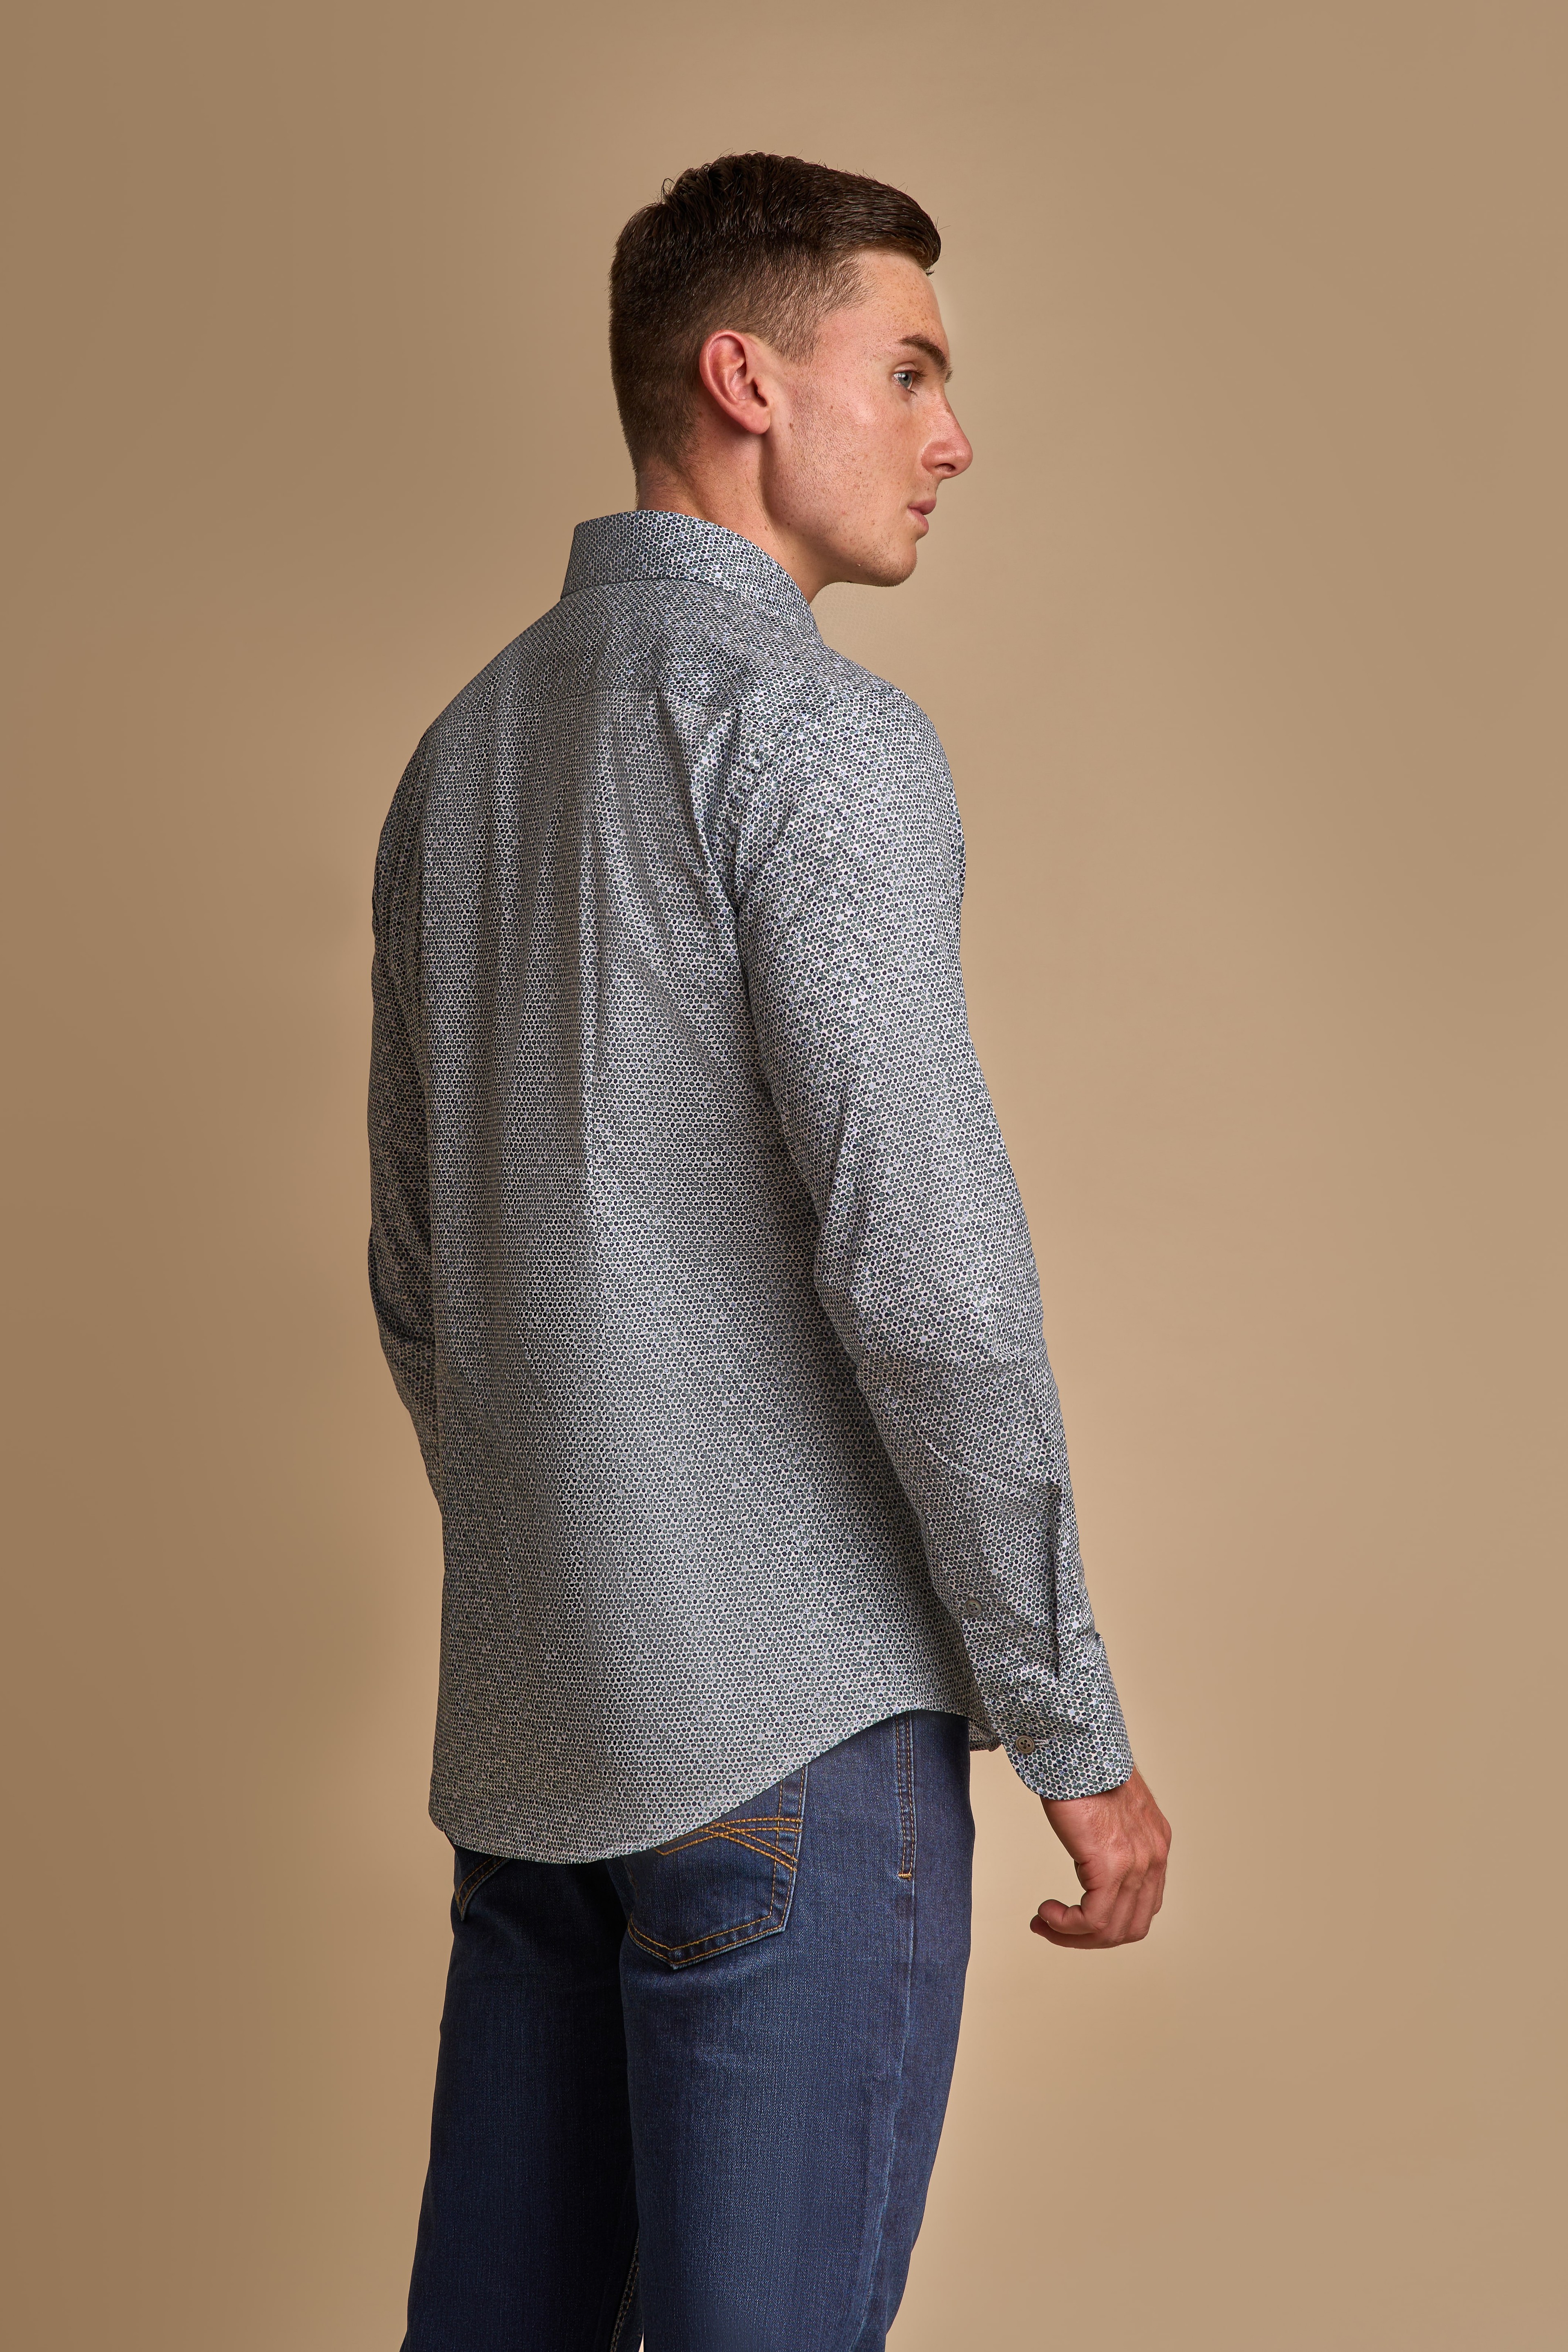 Men's Slim Fit Patterned Cotton Shirt - AIDEN